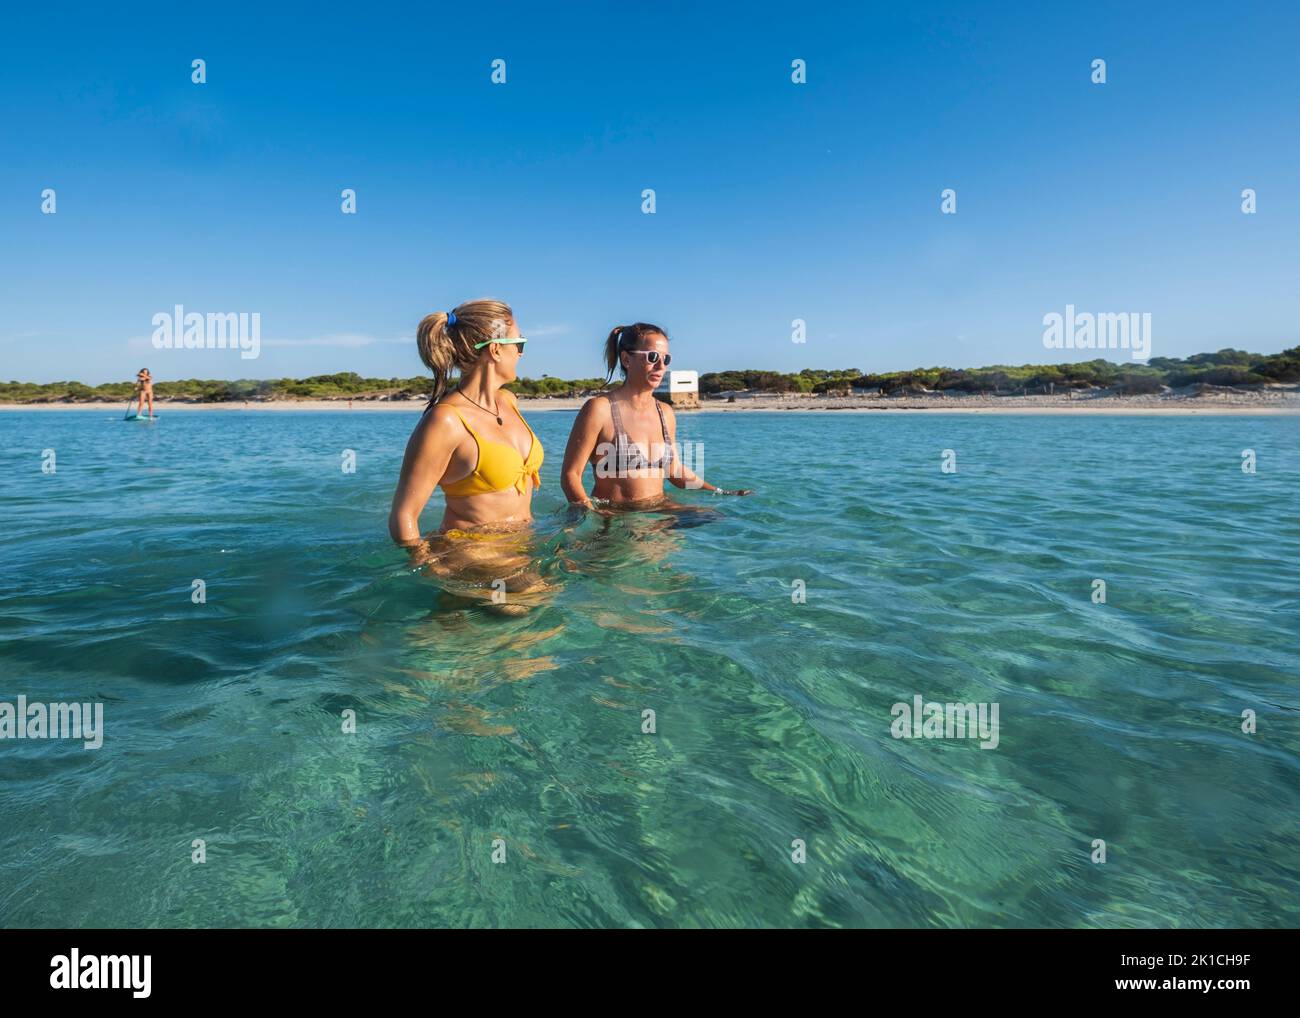 Dos mujeres adultas hablando mientras caminan por el agua, playa de Ses Covetes, Mallorca, Islas Baleares, España Foto de stock